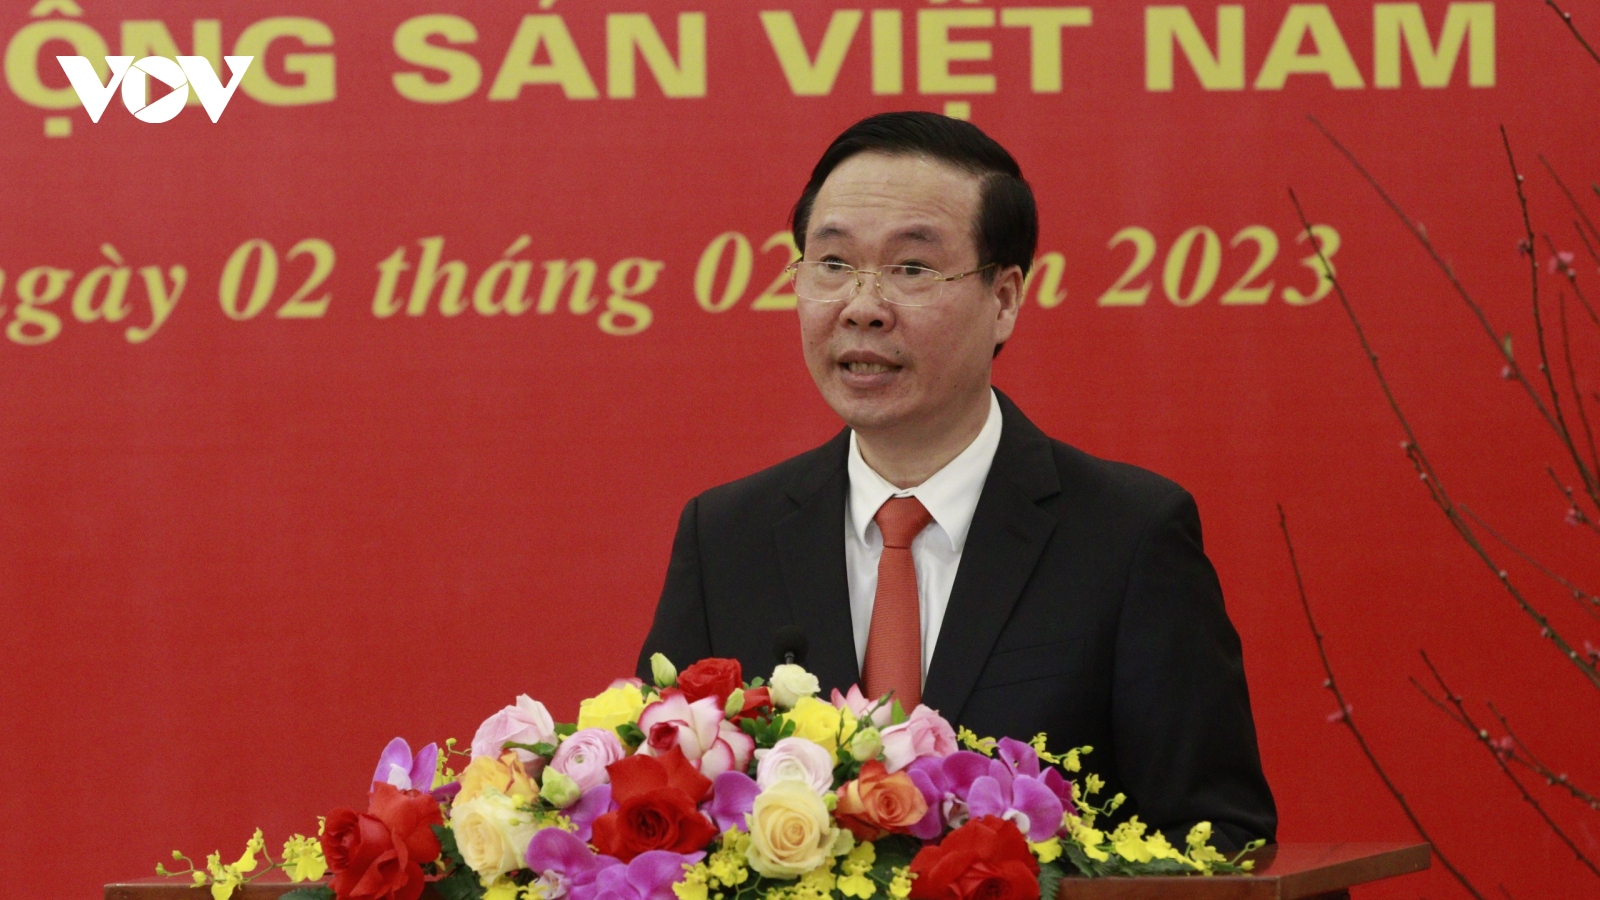 Thường trực Ban Bí thư: Đồng chí Nguyễn Phú Trọng luôn tỏ rõ bản lĩnh, trí tuệ